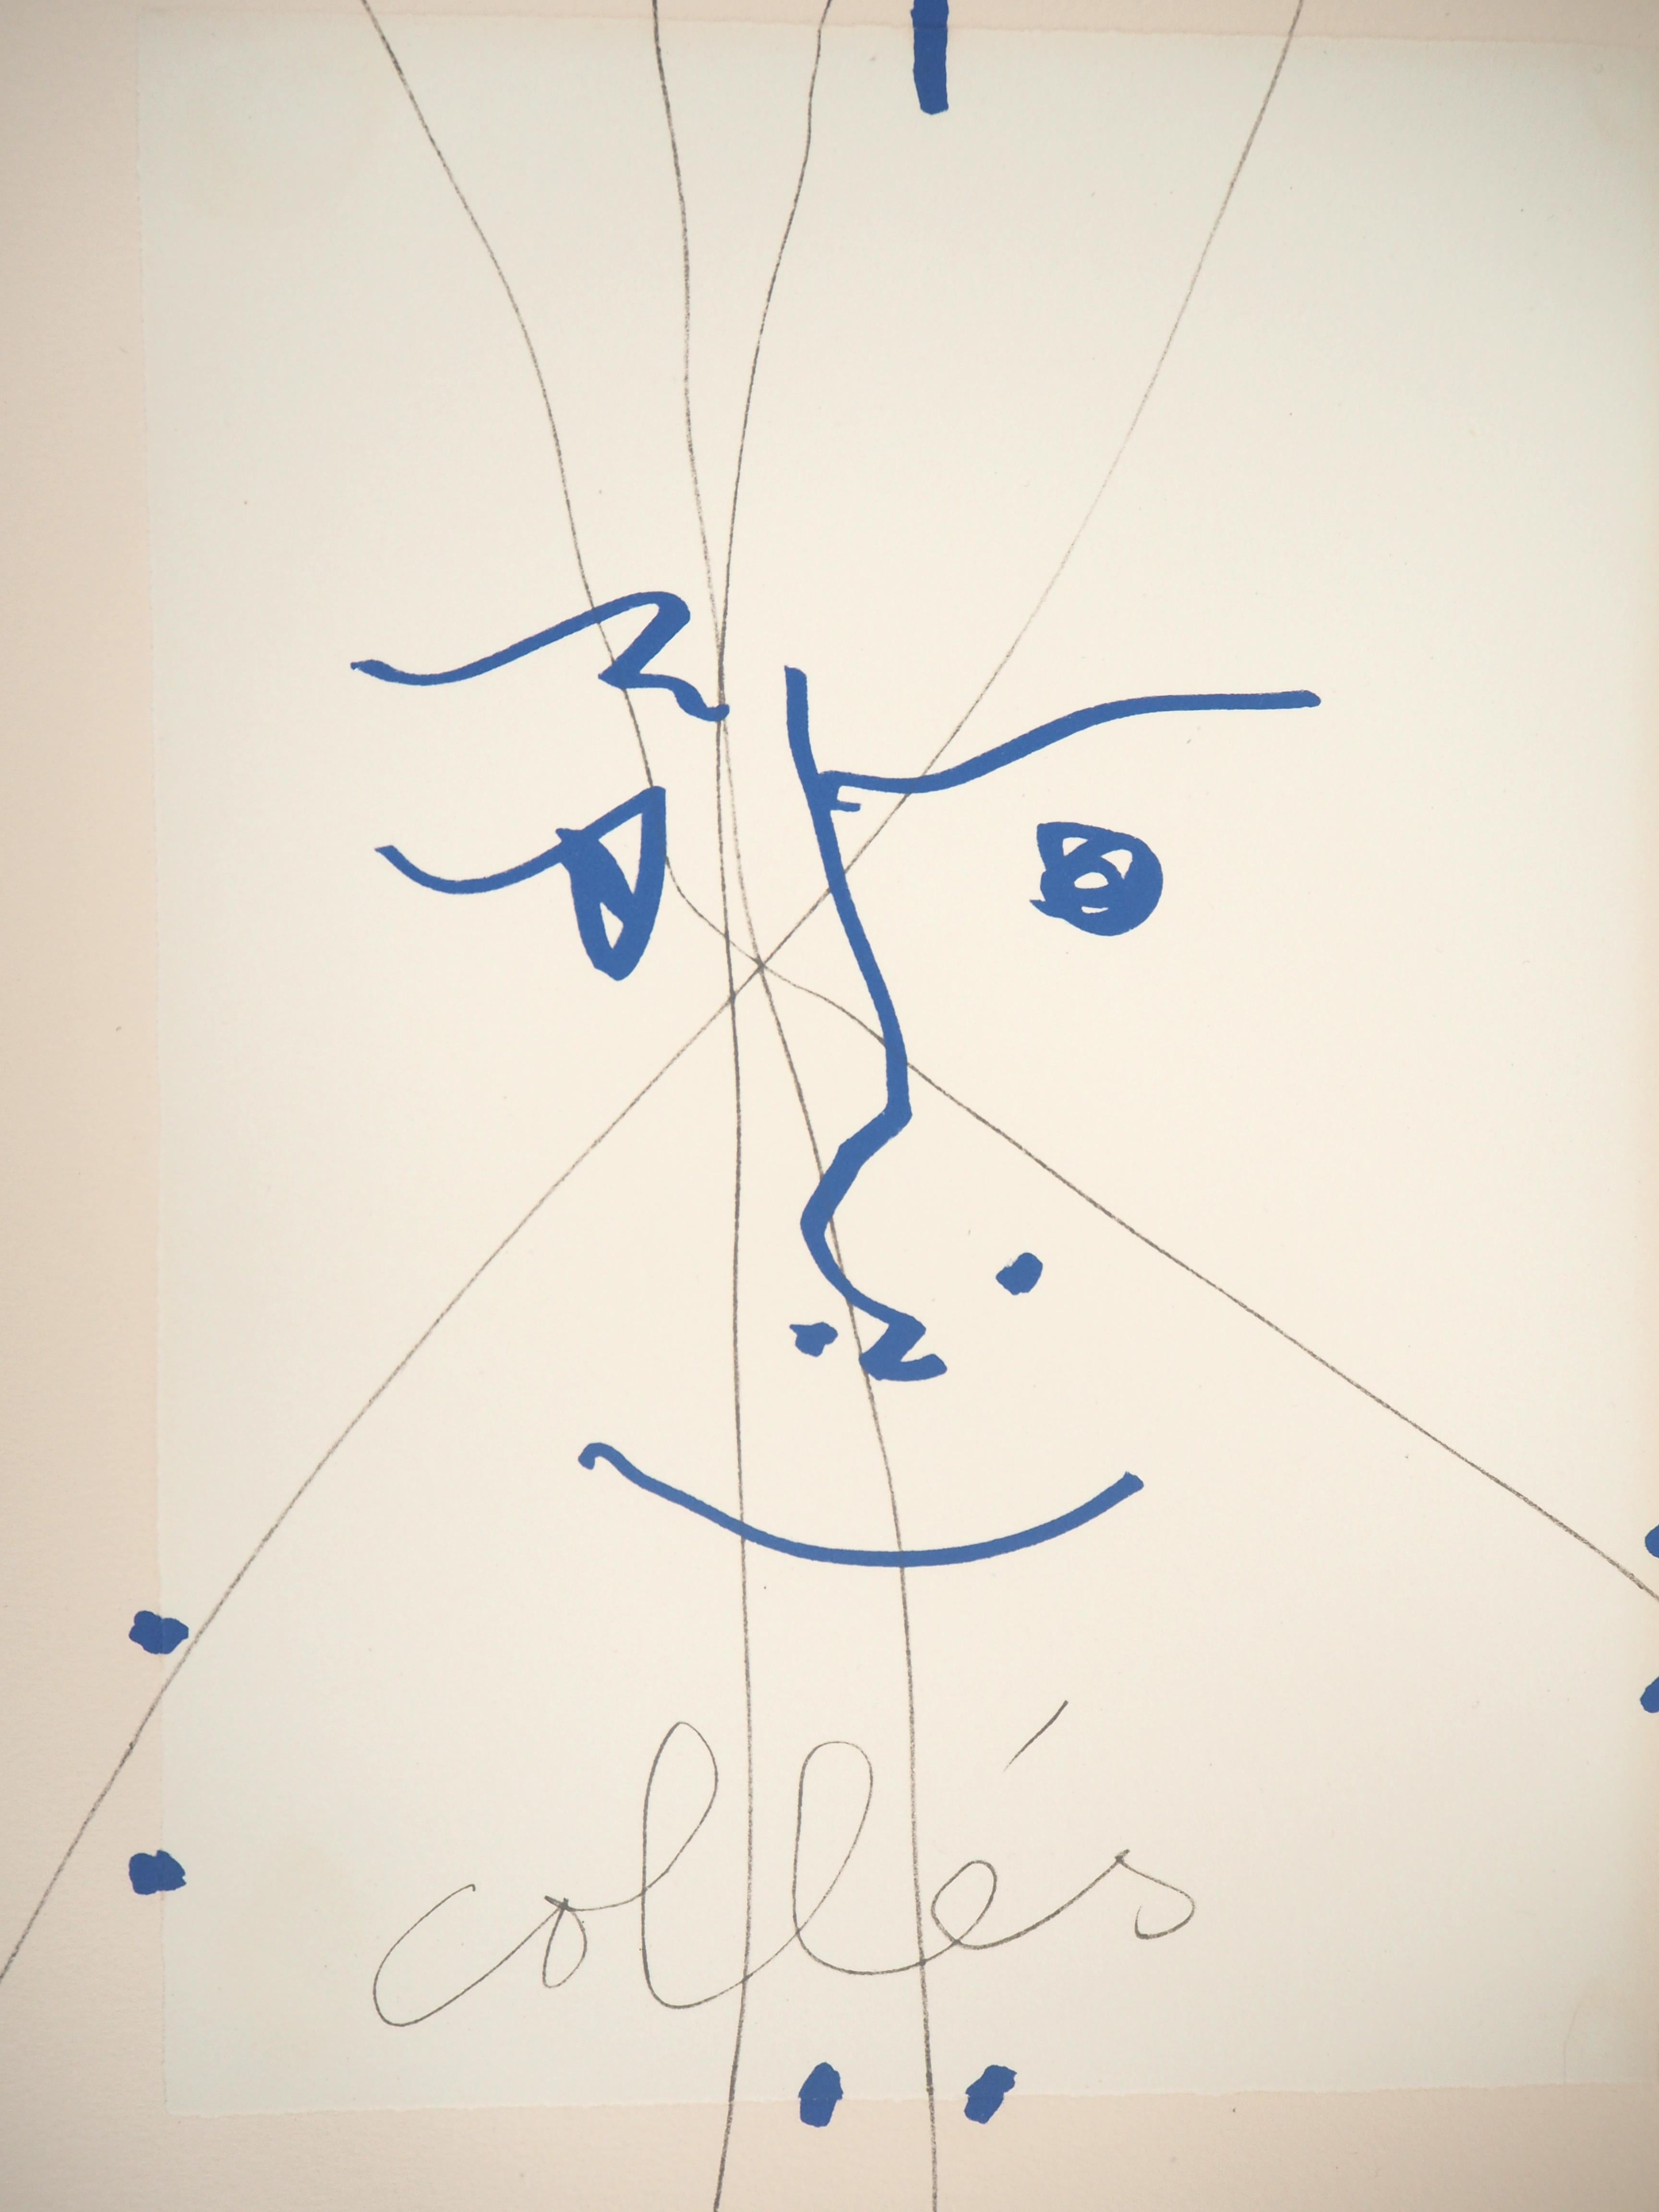 Papiers Collés 1910-1914 - Lithograph #Mourlot - Print by Pablo Picasso